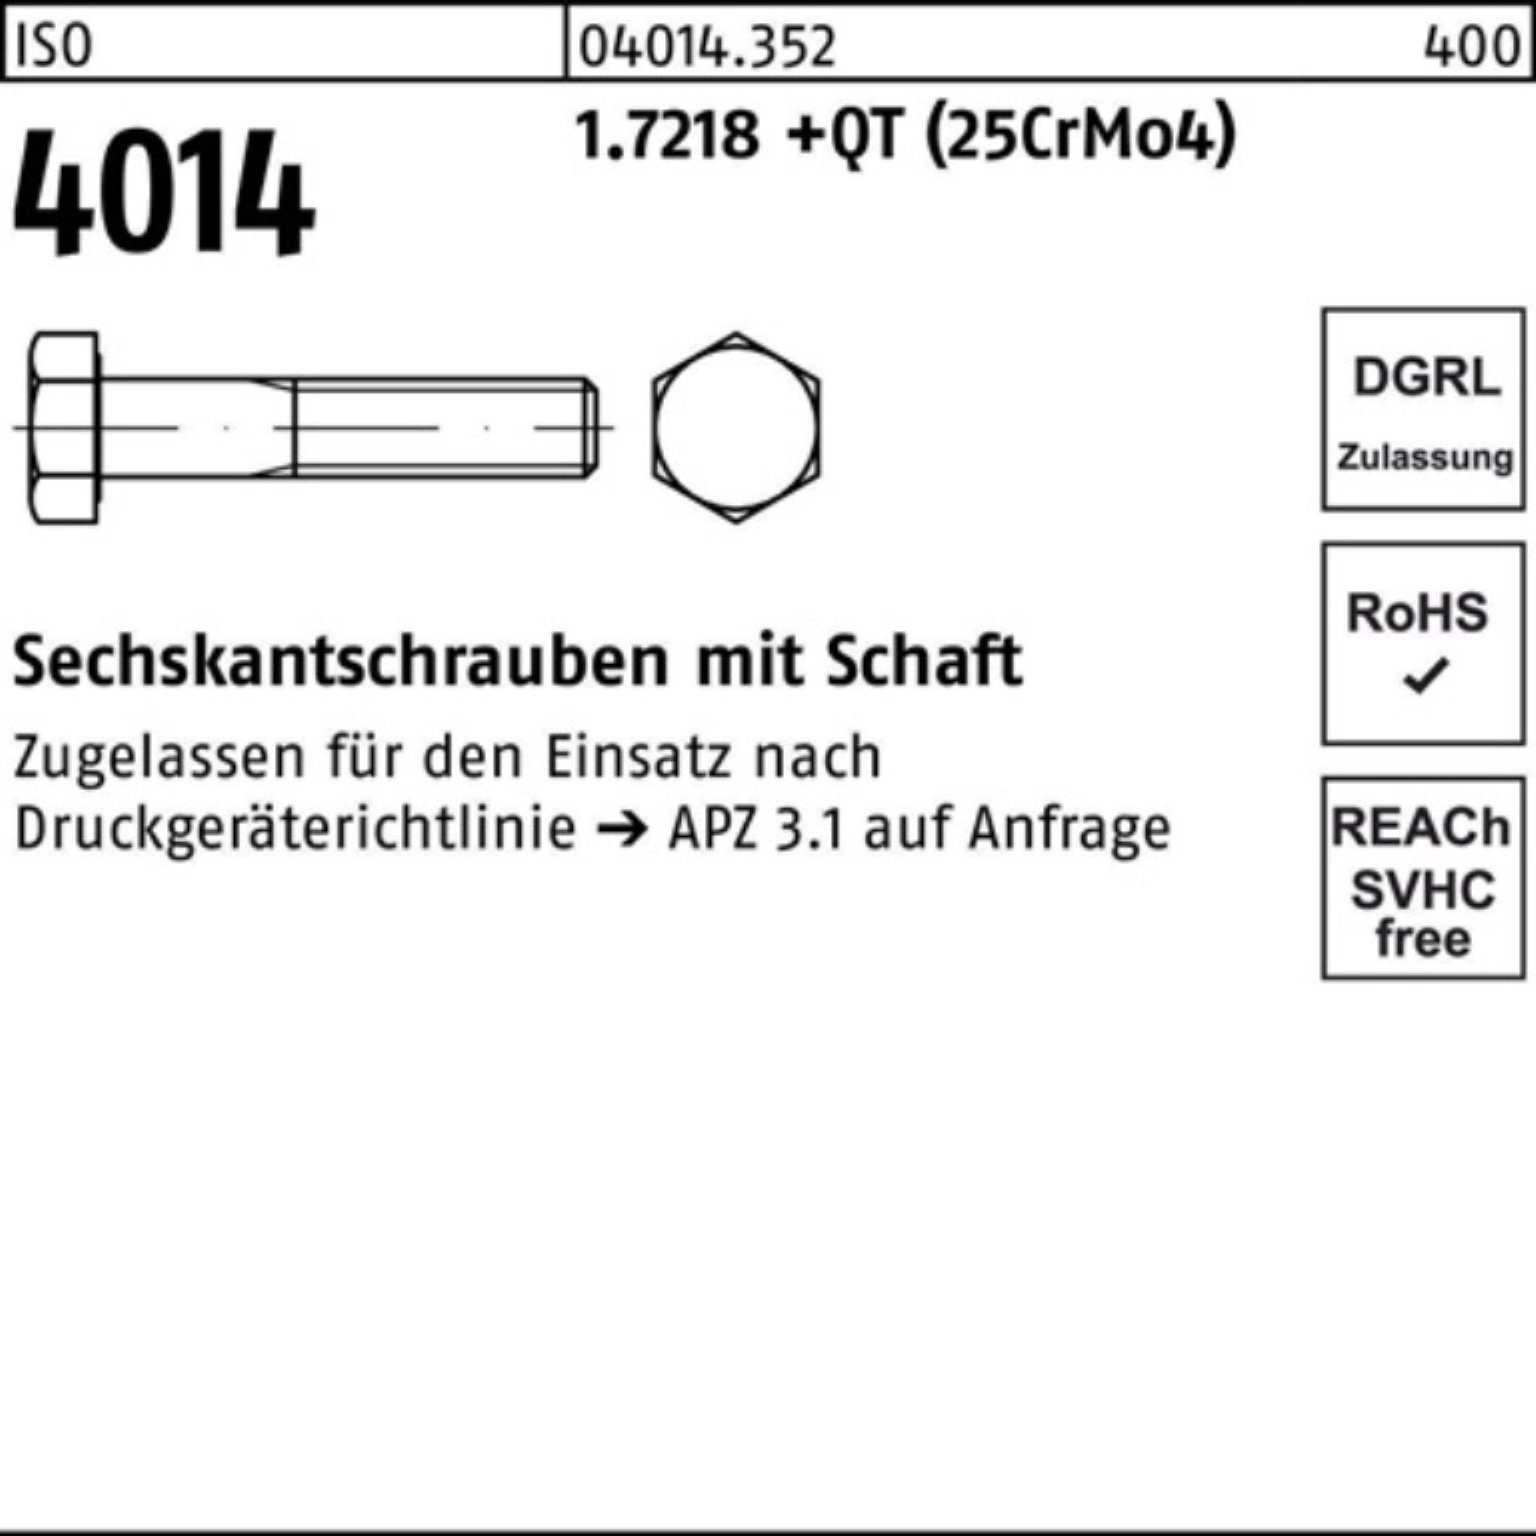 Bufab Sechskantschraube 100er Pack Sechskantschraube M39x 180 +QT 4014 (25Cr 1.7218 ISO Schaft